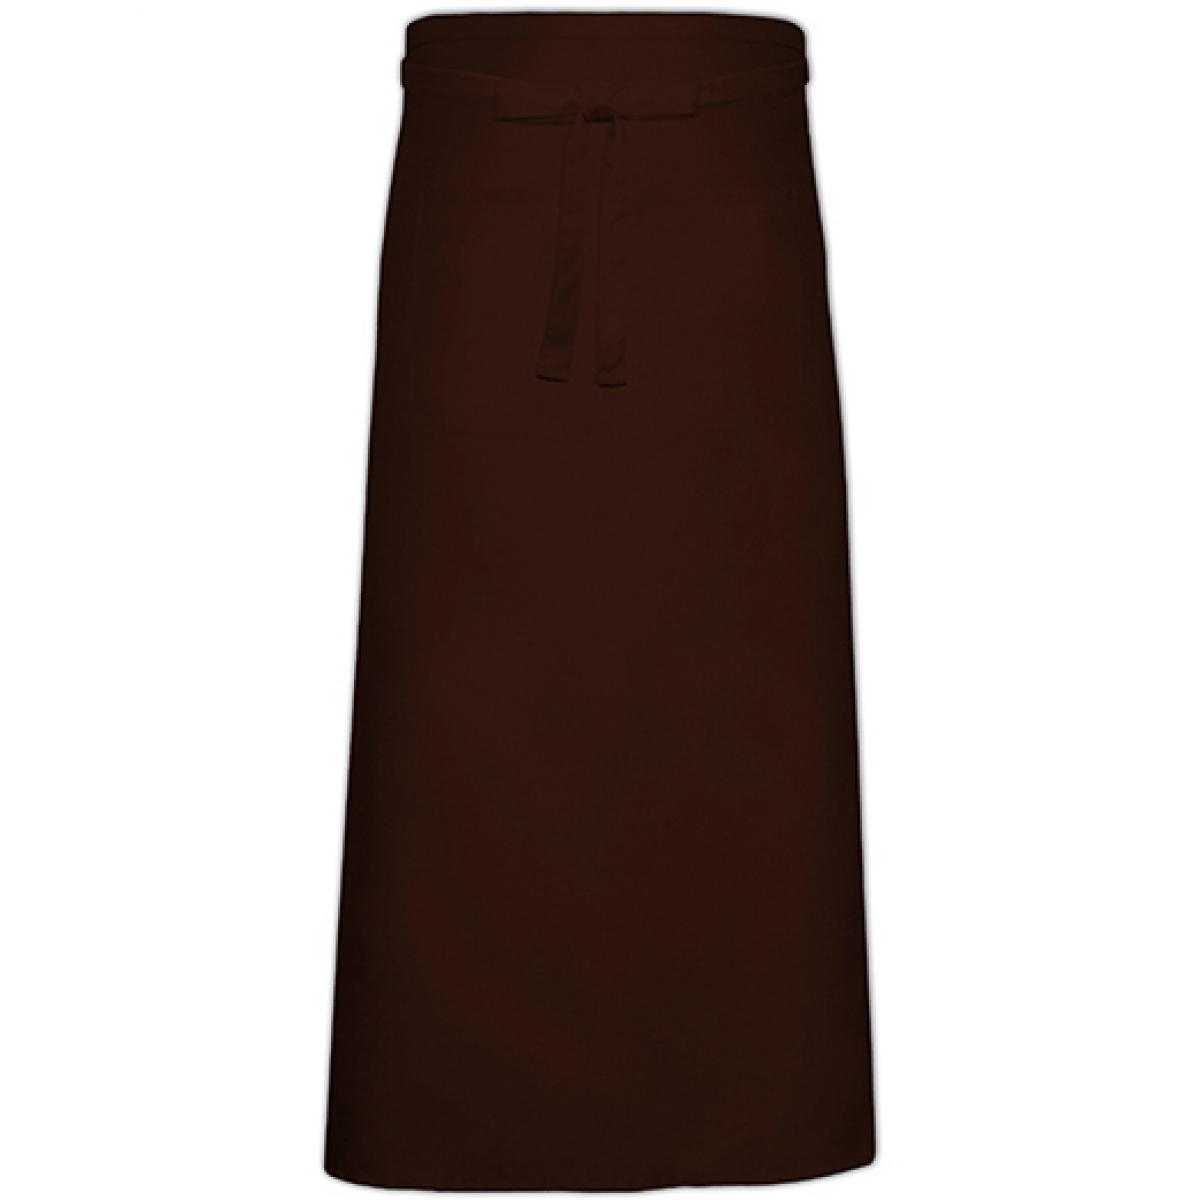 Hersteller: Link Kitchen Wear Herstellernummer: FS100120 Z Artikelbezeichnung: Bistro Apron XL with Front Pocket - 120 x 100 cm Farbe: Brown